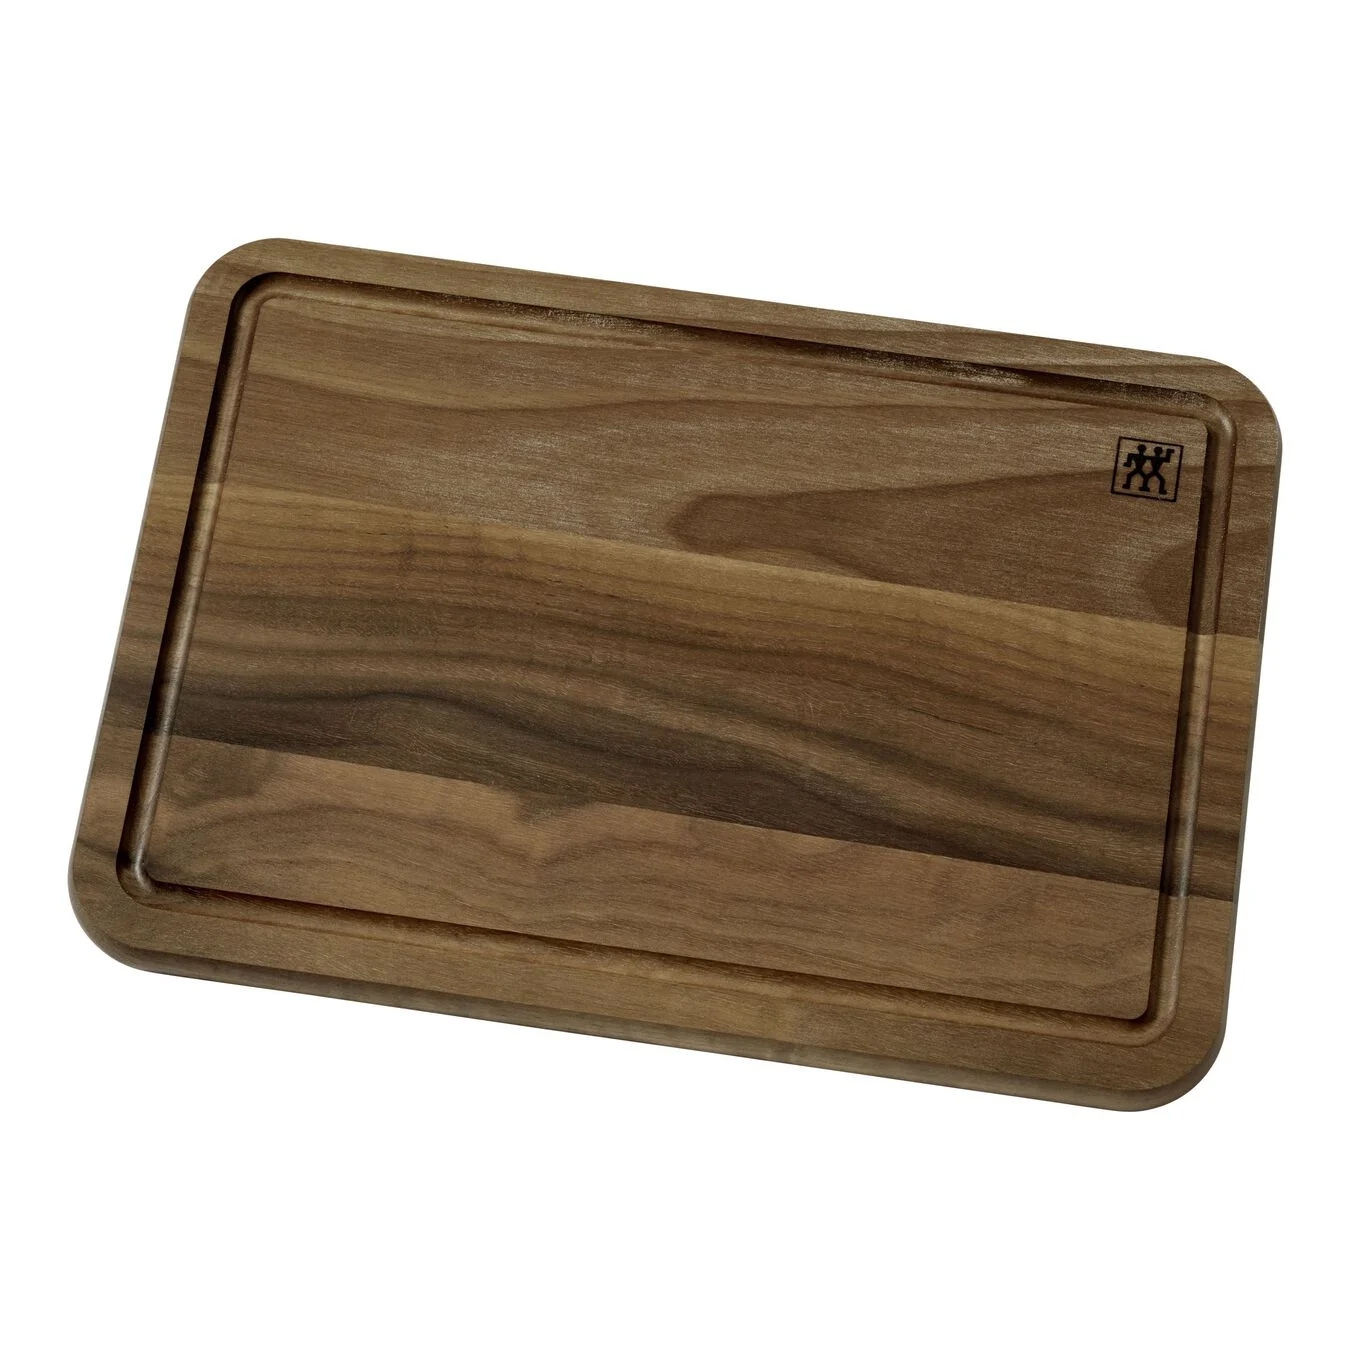 Zwilling - Cutting board 35 cm x 25 cm, walnut